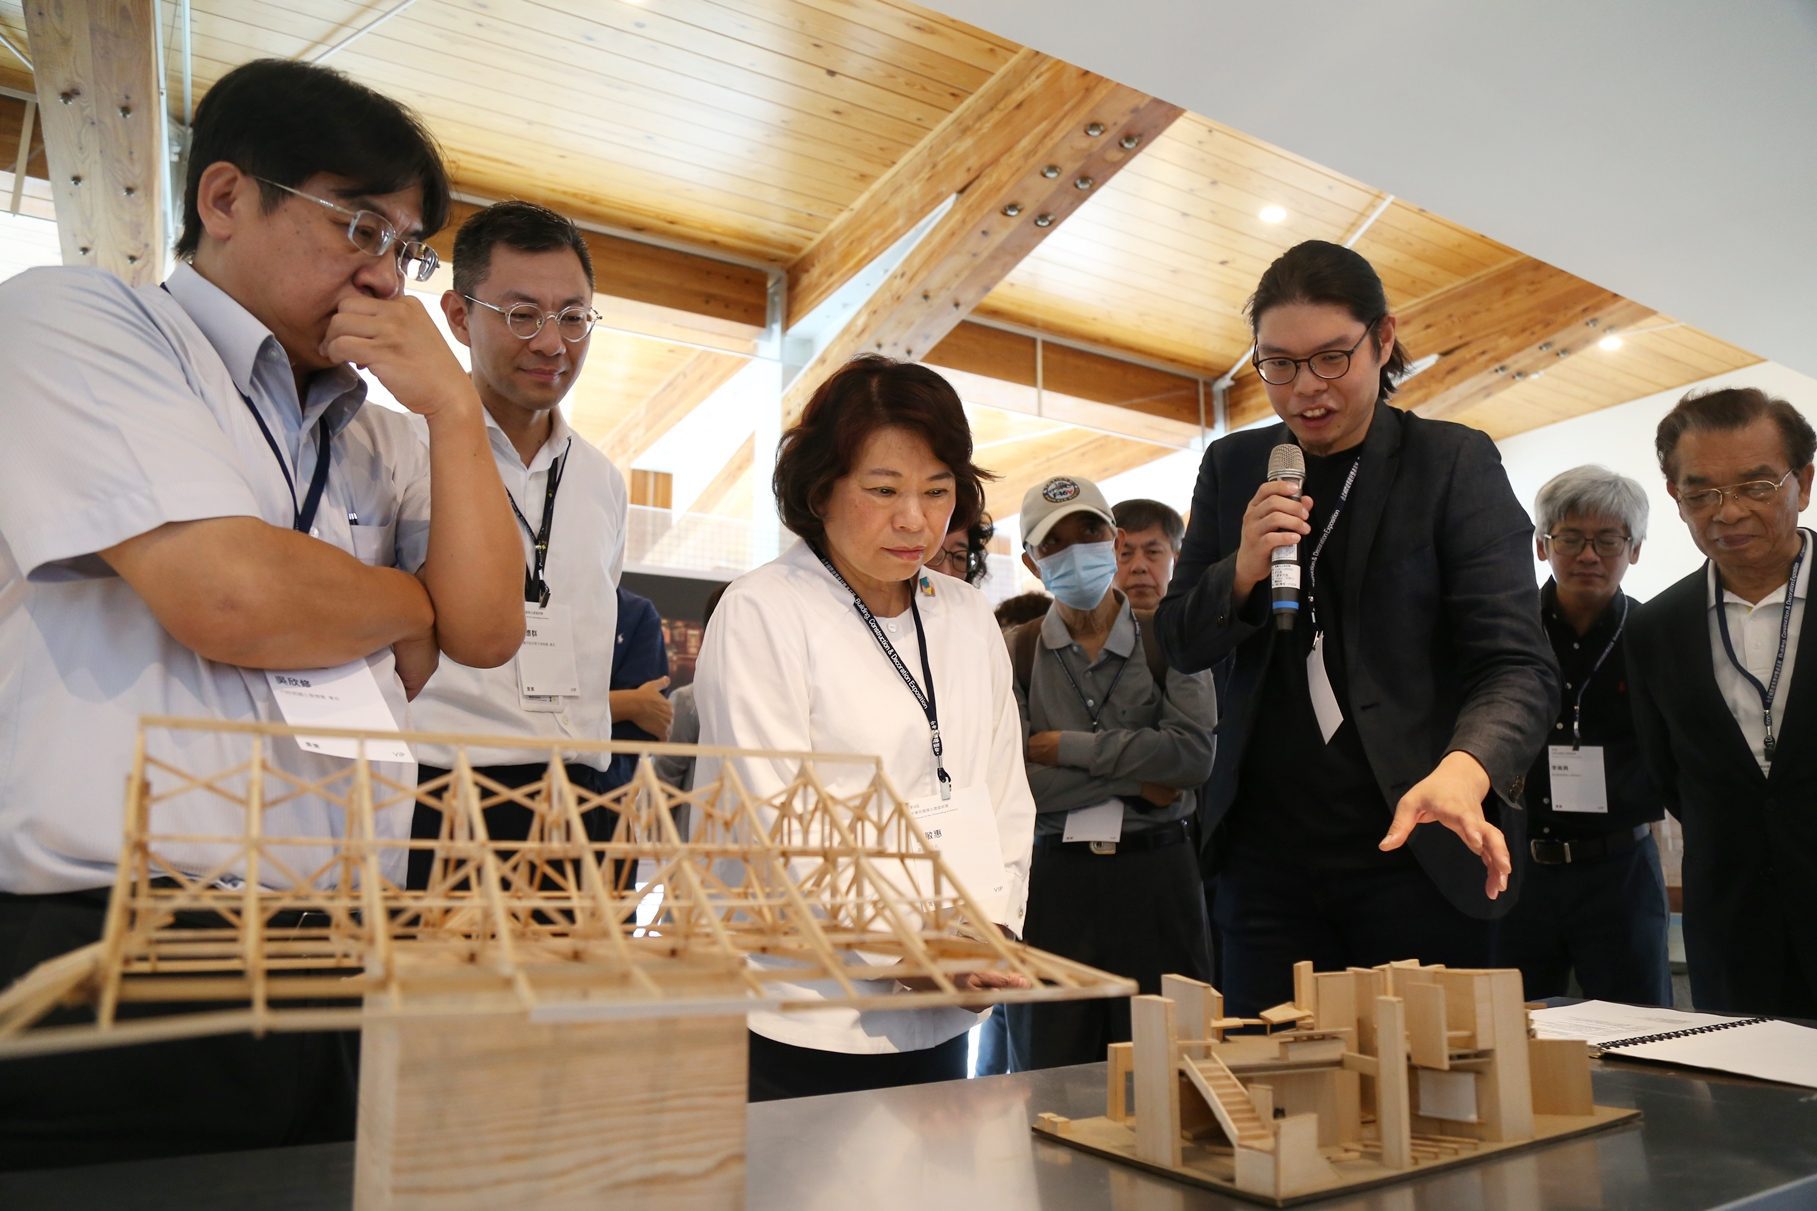 傑出建築師郭俊沛獲獎作品即日起於嘉美館展出 黃敏惠市長邀全民把握展期共賞